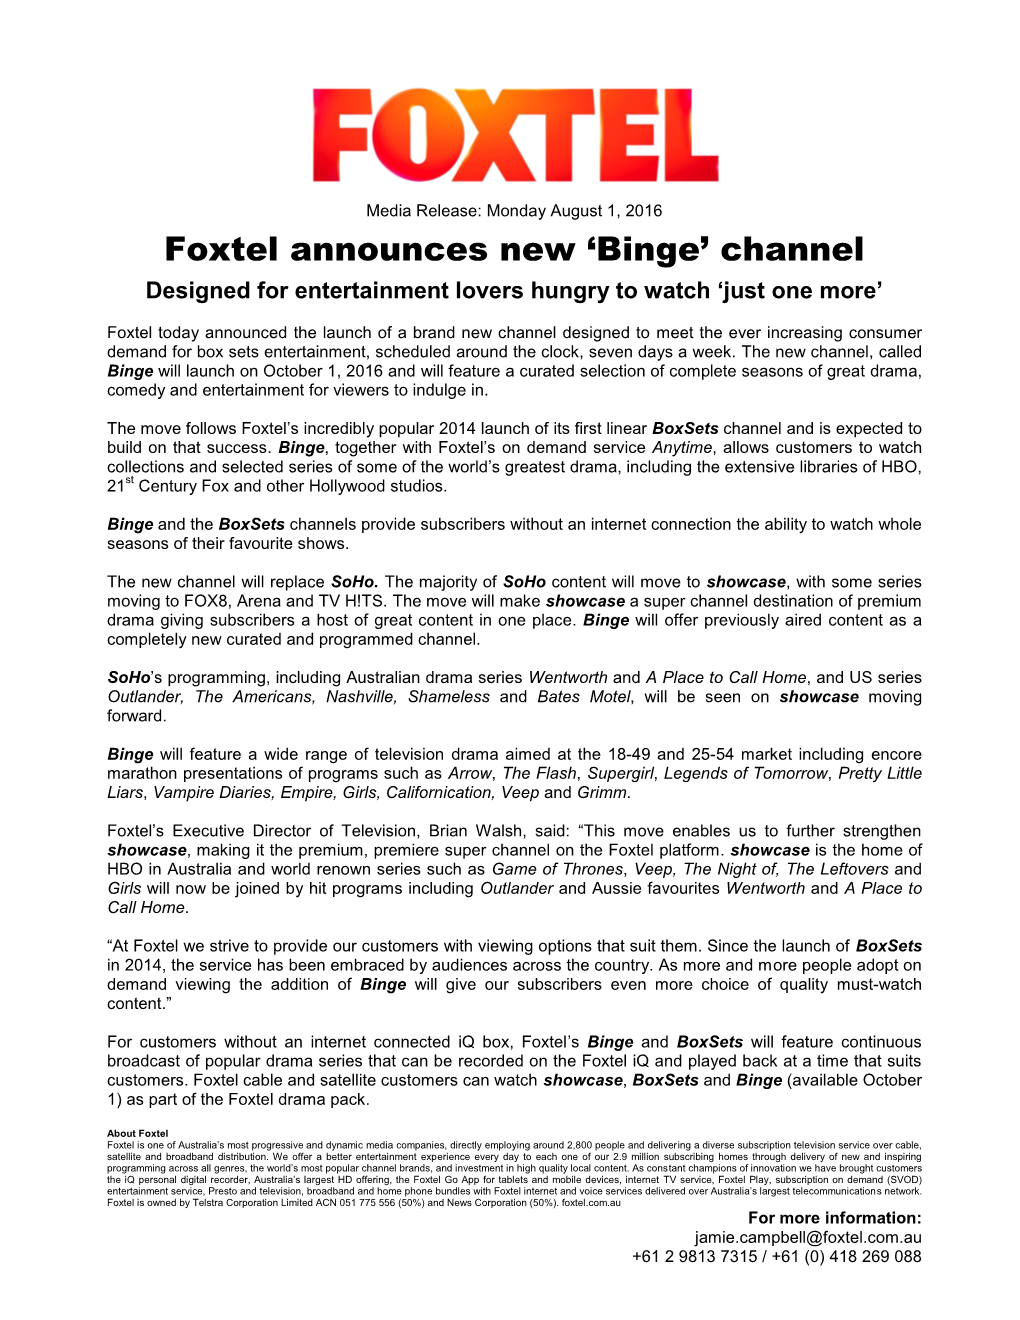 Foxtel Announces New 'Binge' Channel